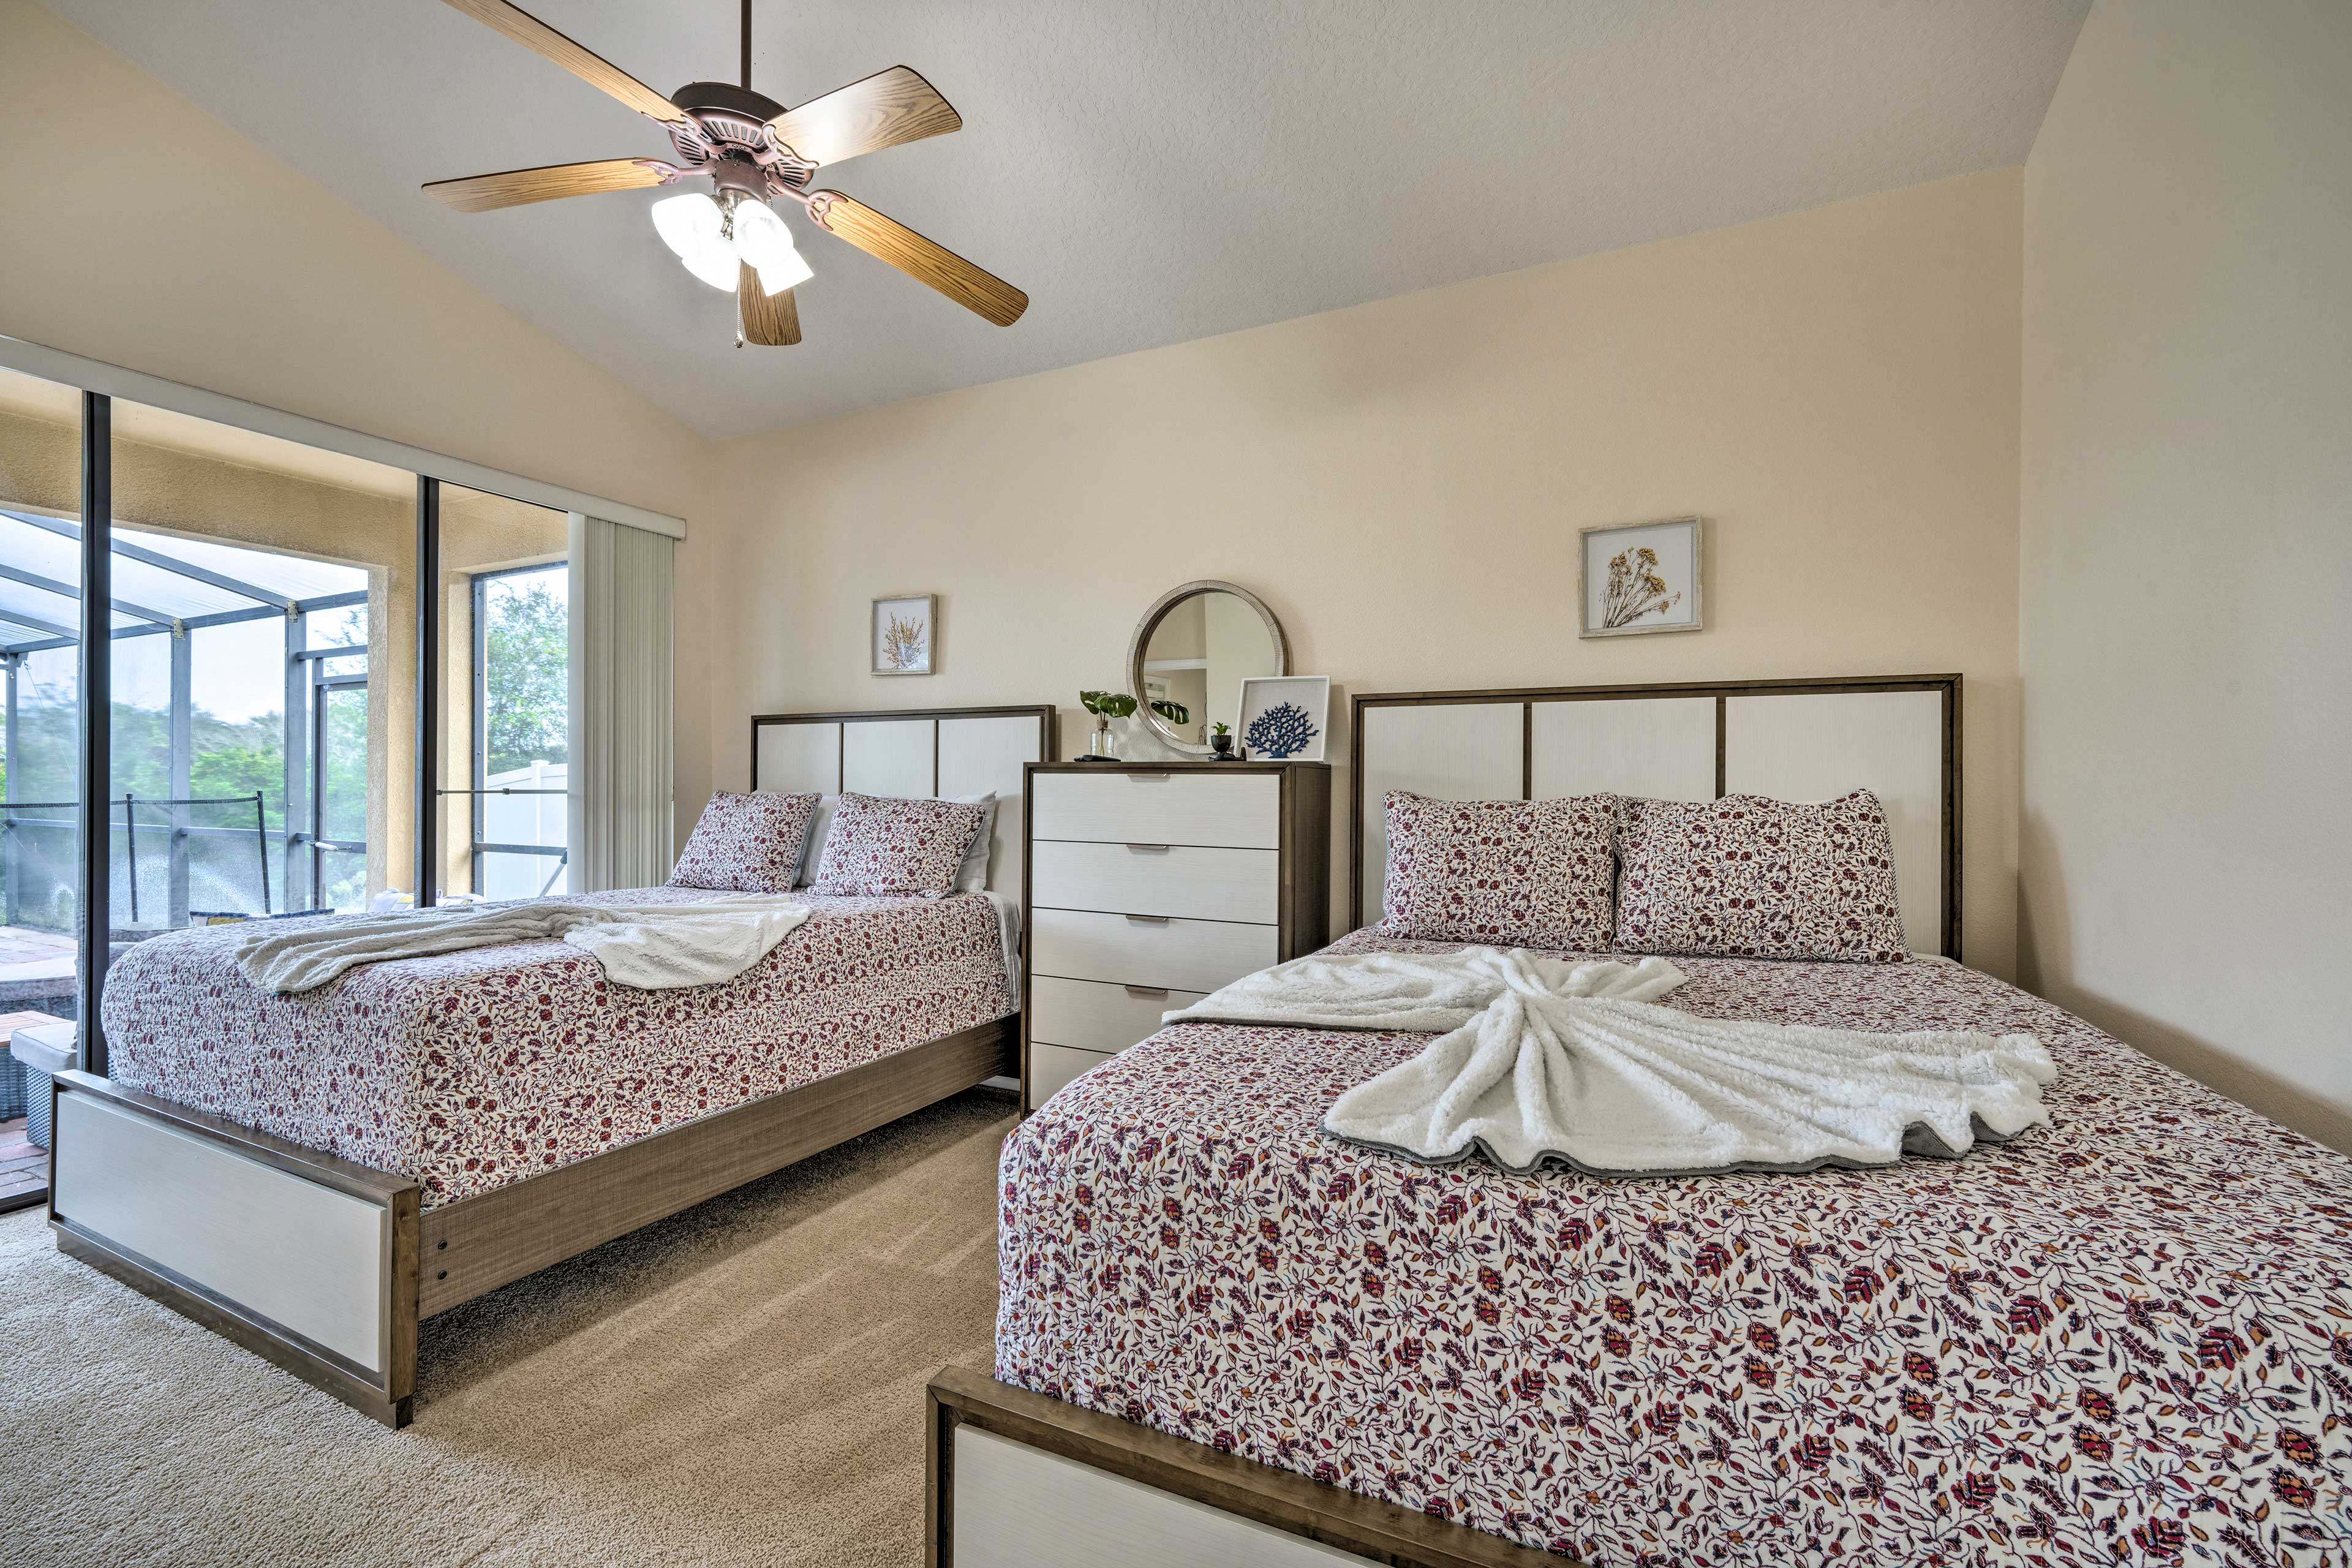 Bedroom 2 | 2 Queen Beds | Linens & Towels Provided | En-Suite Bathroom